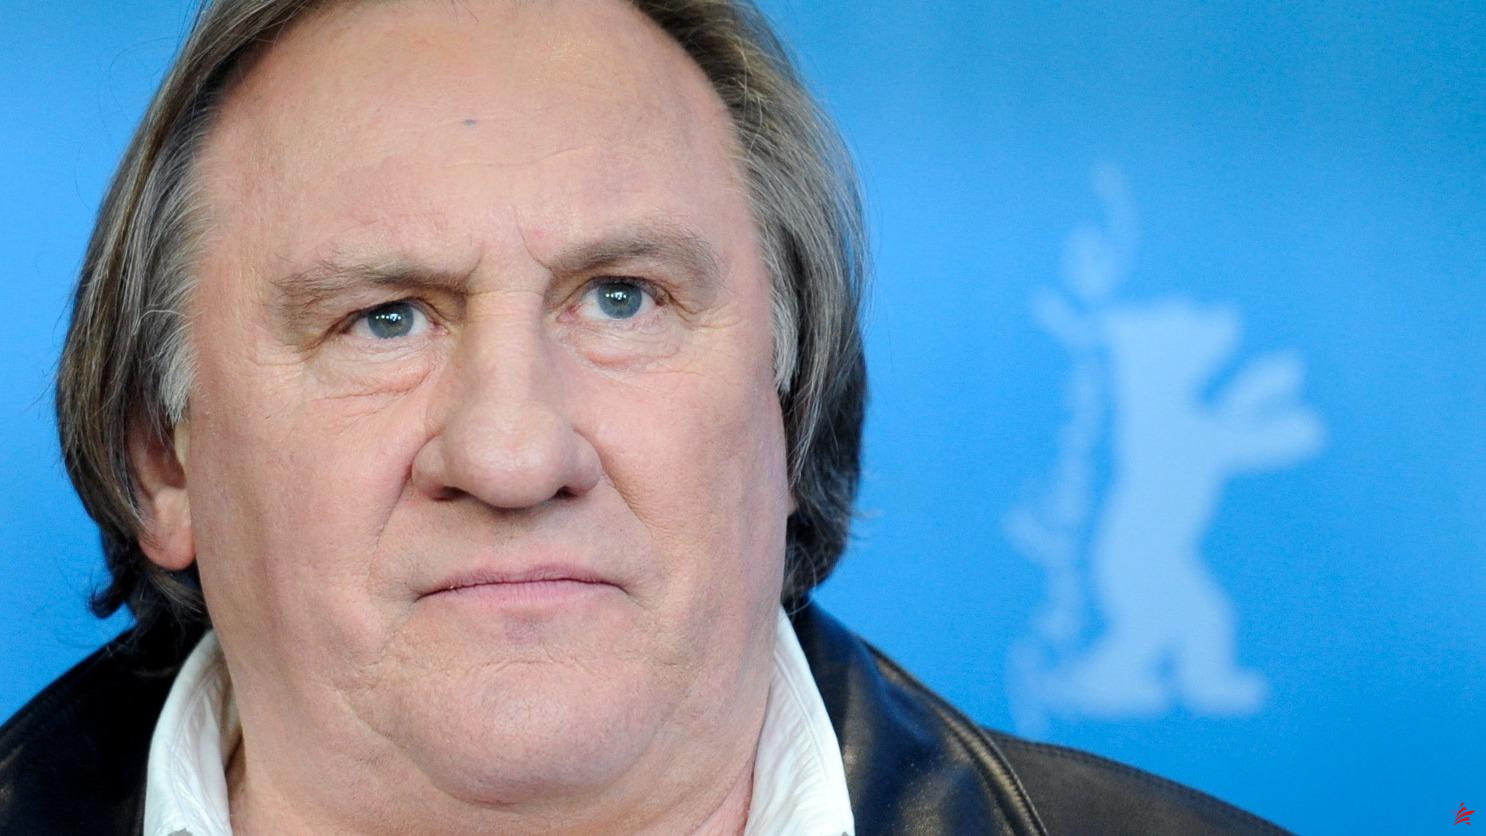 El caso Depardieu sigue fracturando la “gran familia” del cine francés